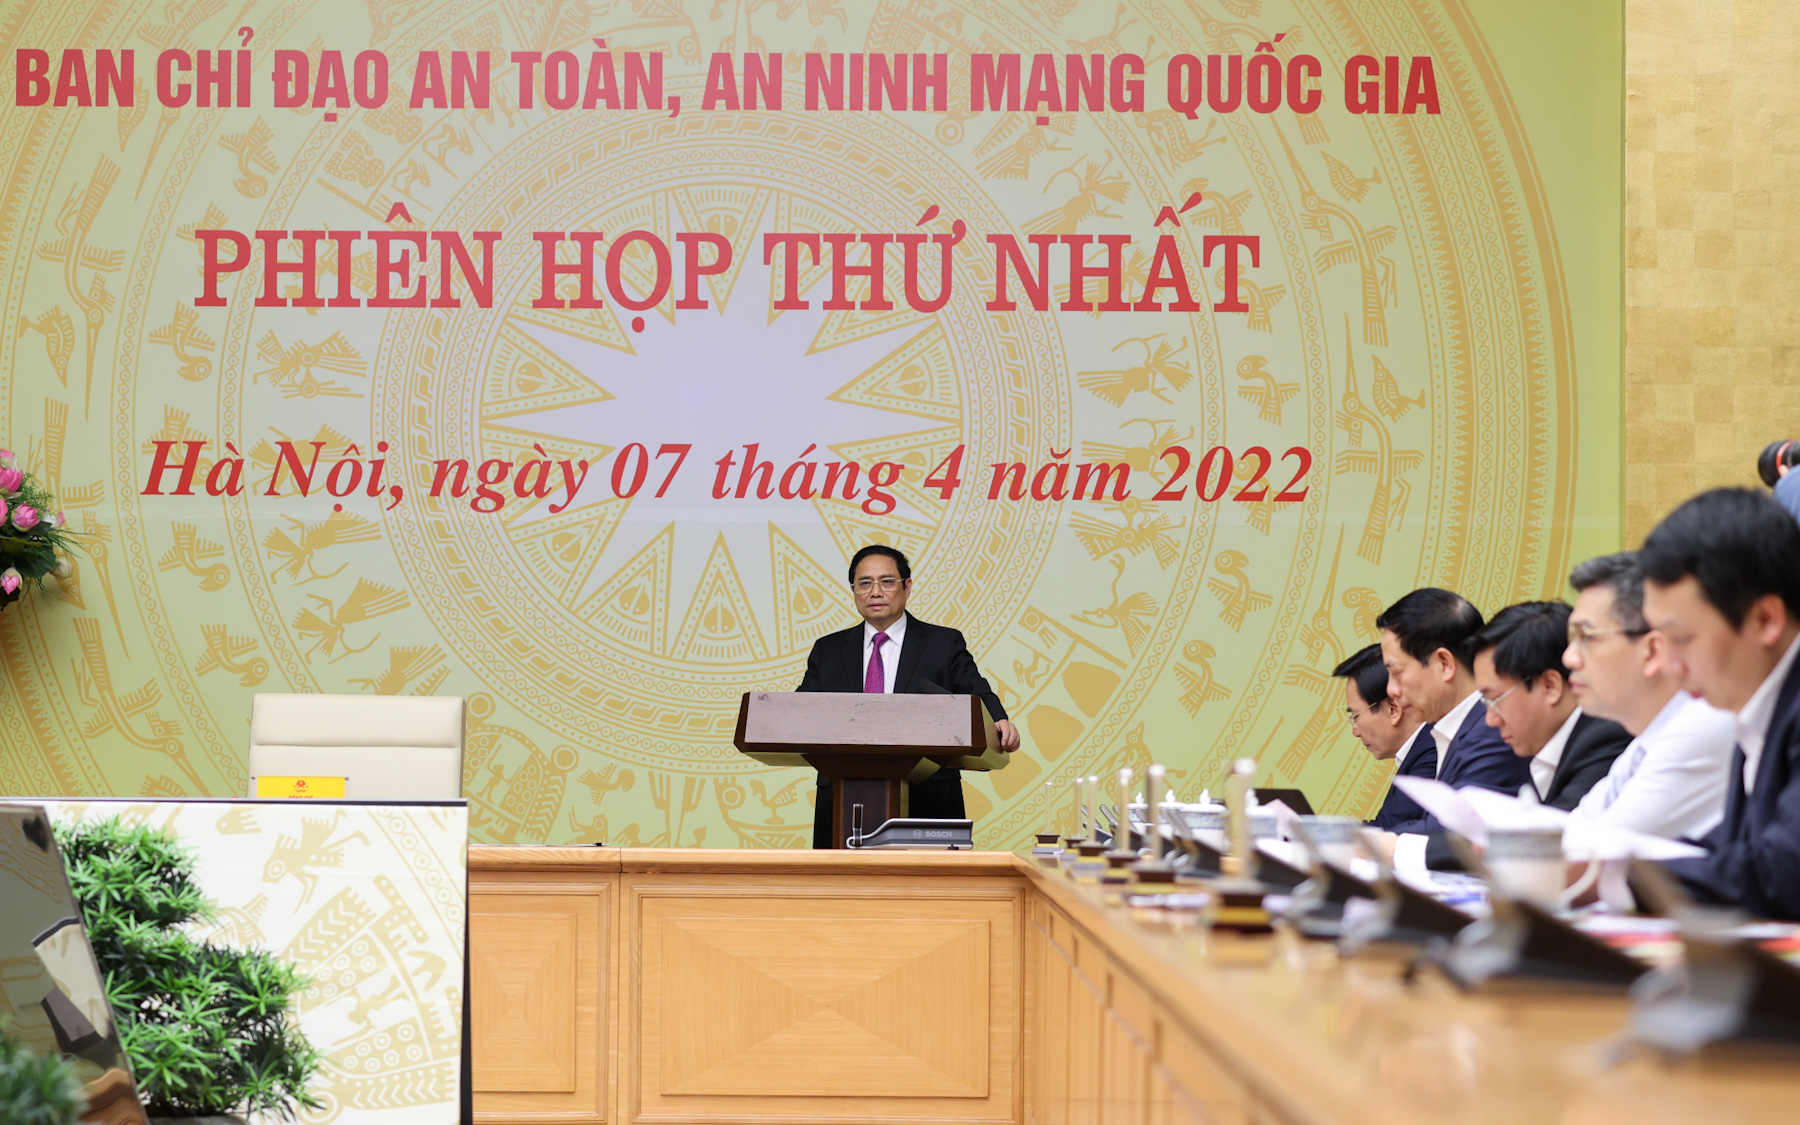 Thủ tướng Phạm Minh Chính: Chủ động bảo vệ chủ quyền quốc gia, an toàn, an ninh trên không gian mạng